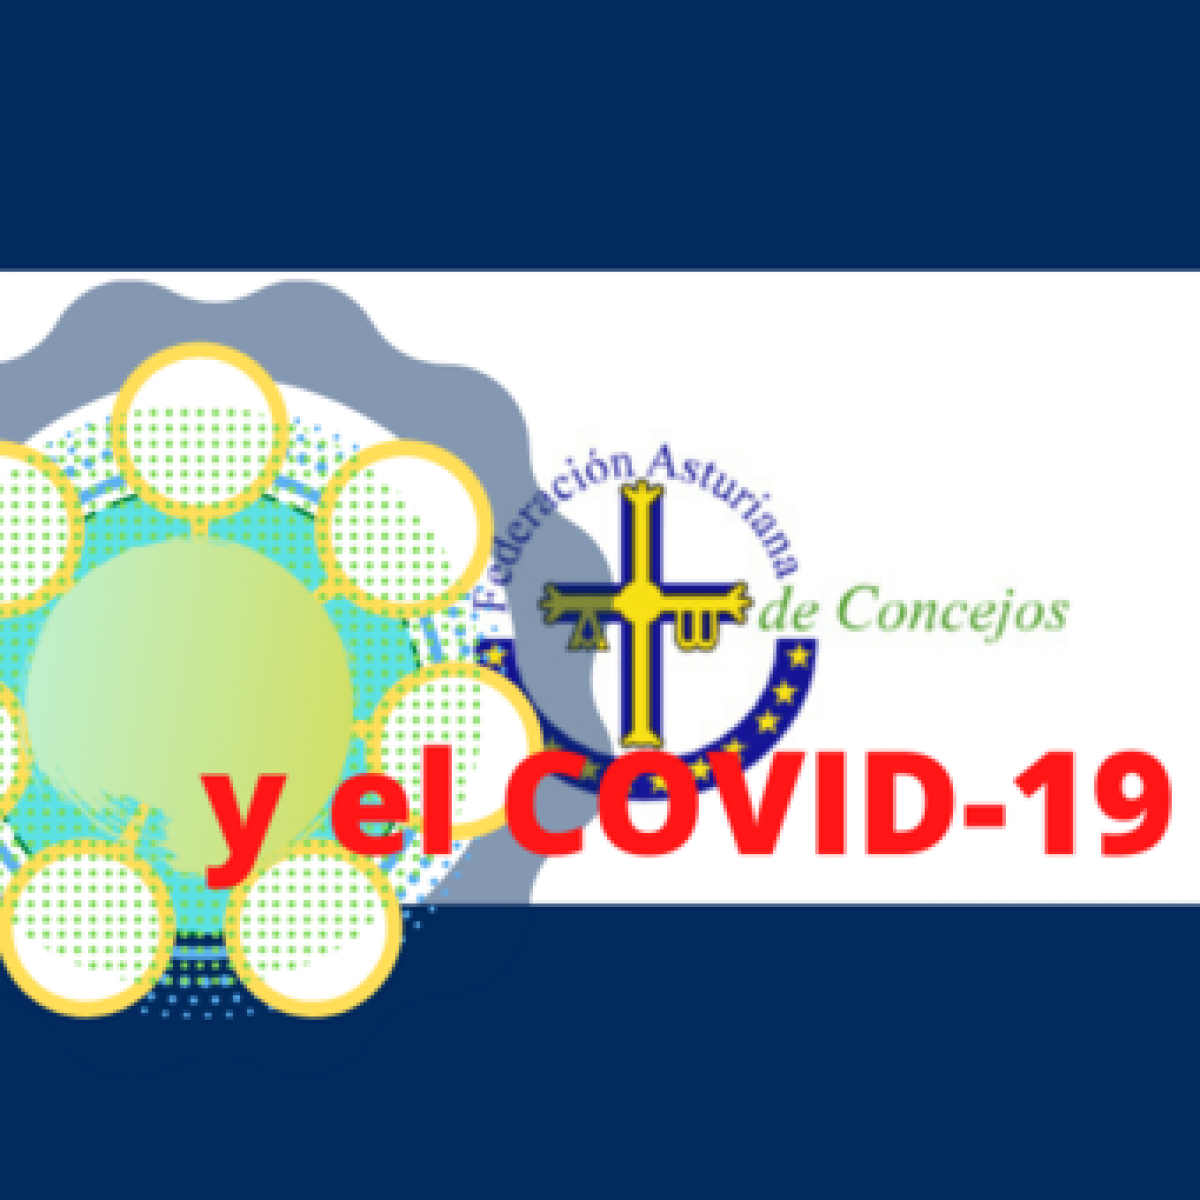 Federacin Asturiana de Concejos y el covid-19